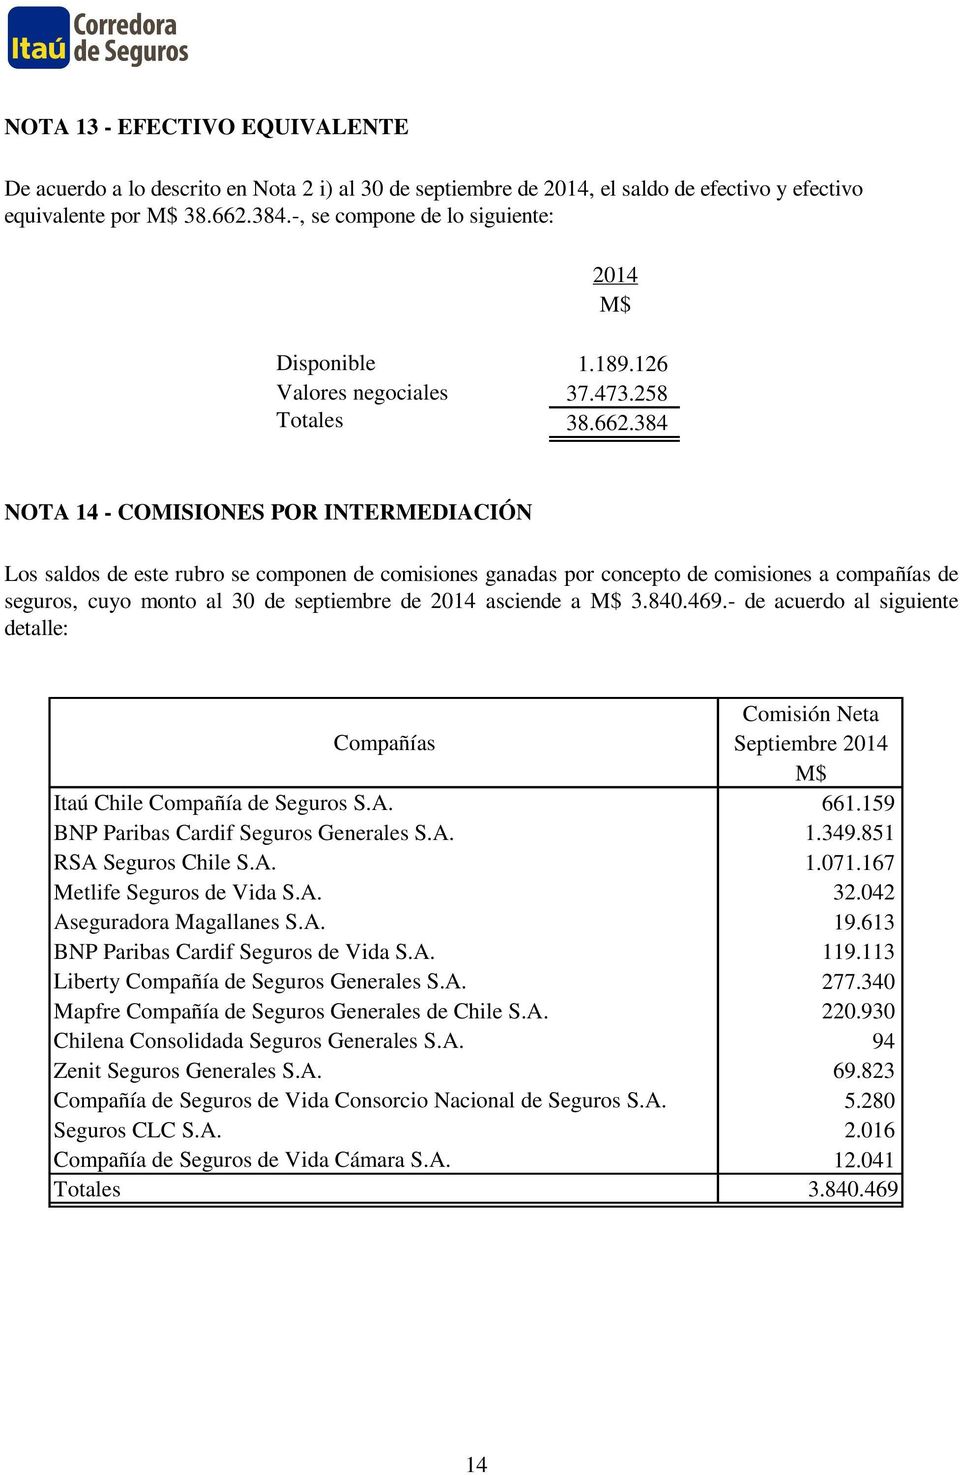 384 NOTA 14 - COMISIONES POR INTERMEDIACIÓN Los saldos de este rubro se componen de comisiones ganadas por concepto de comisiones a compañías de seguros, cuyo monto al 30 de septiembre de 2014